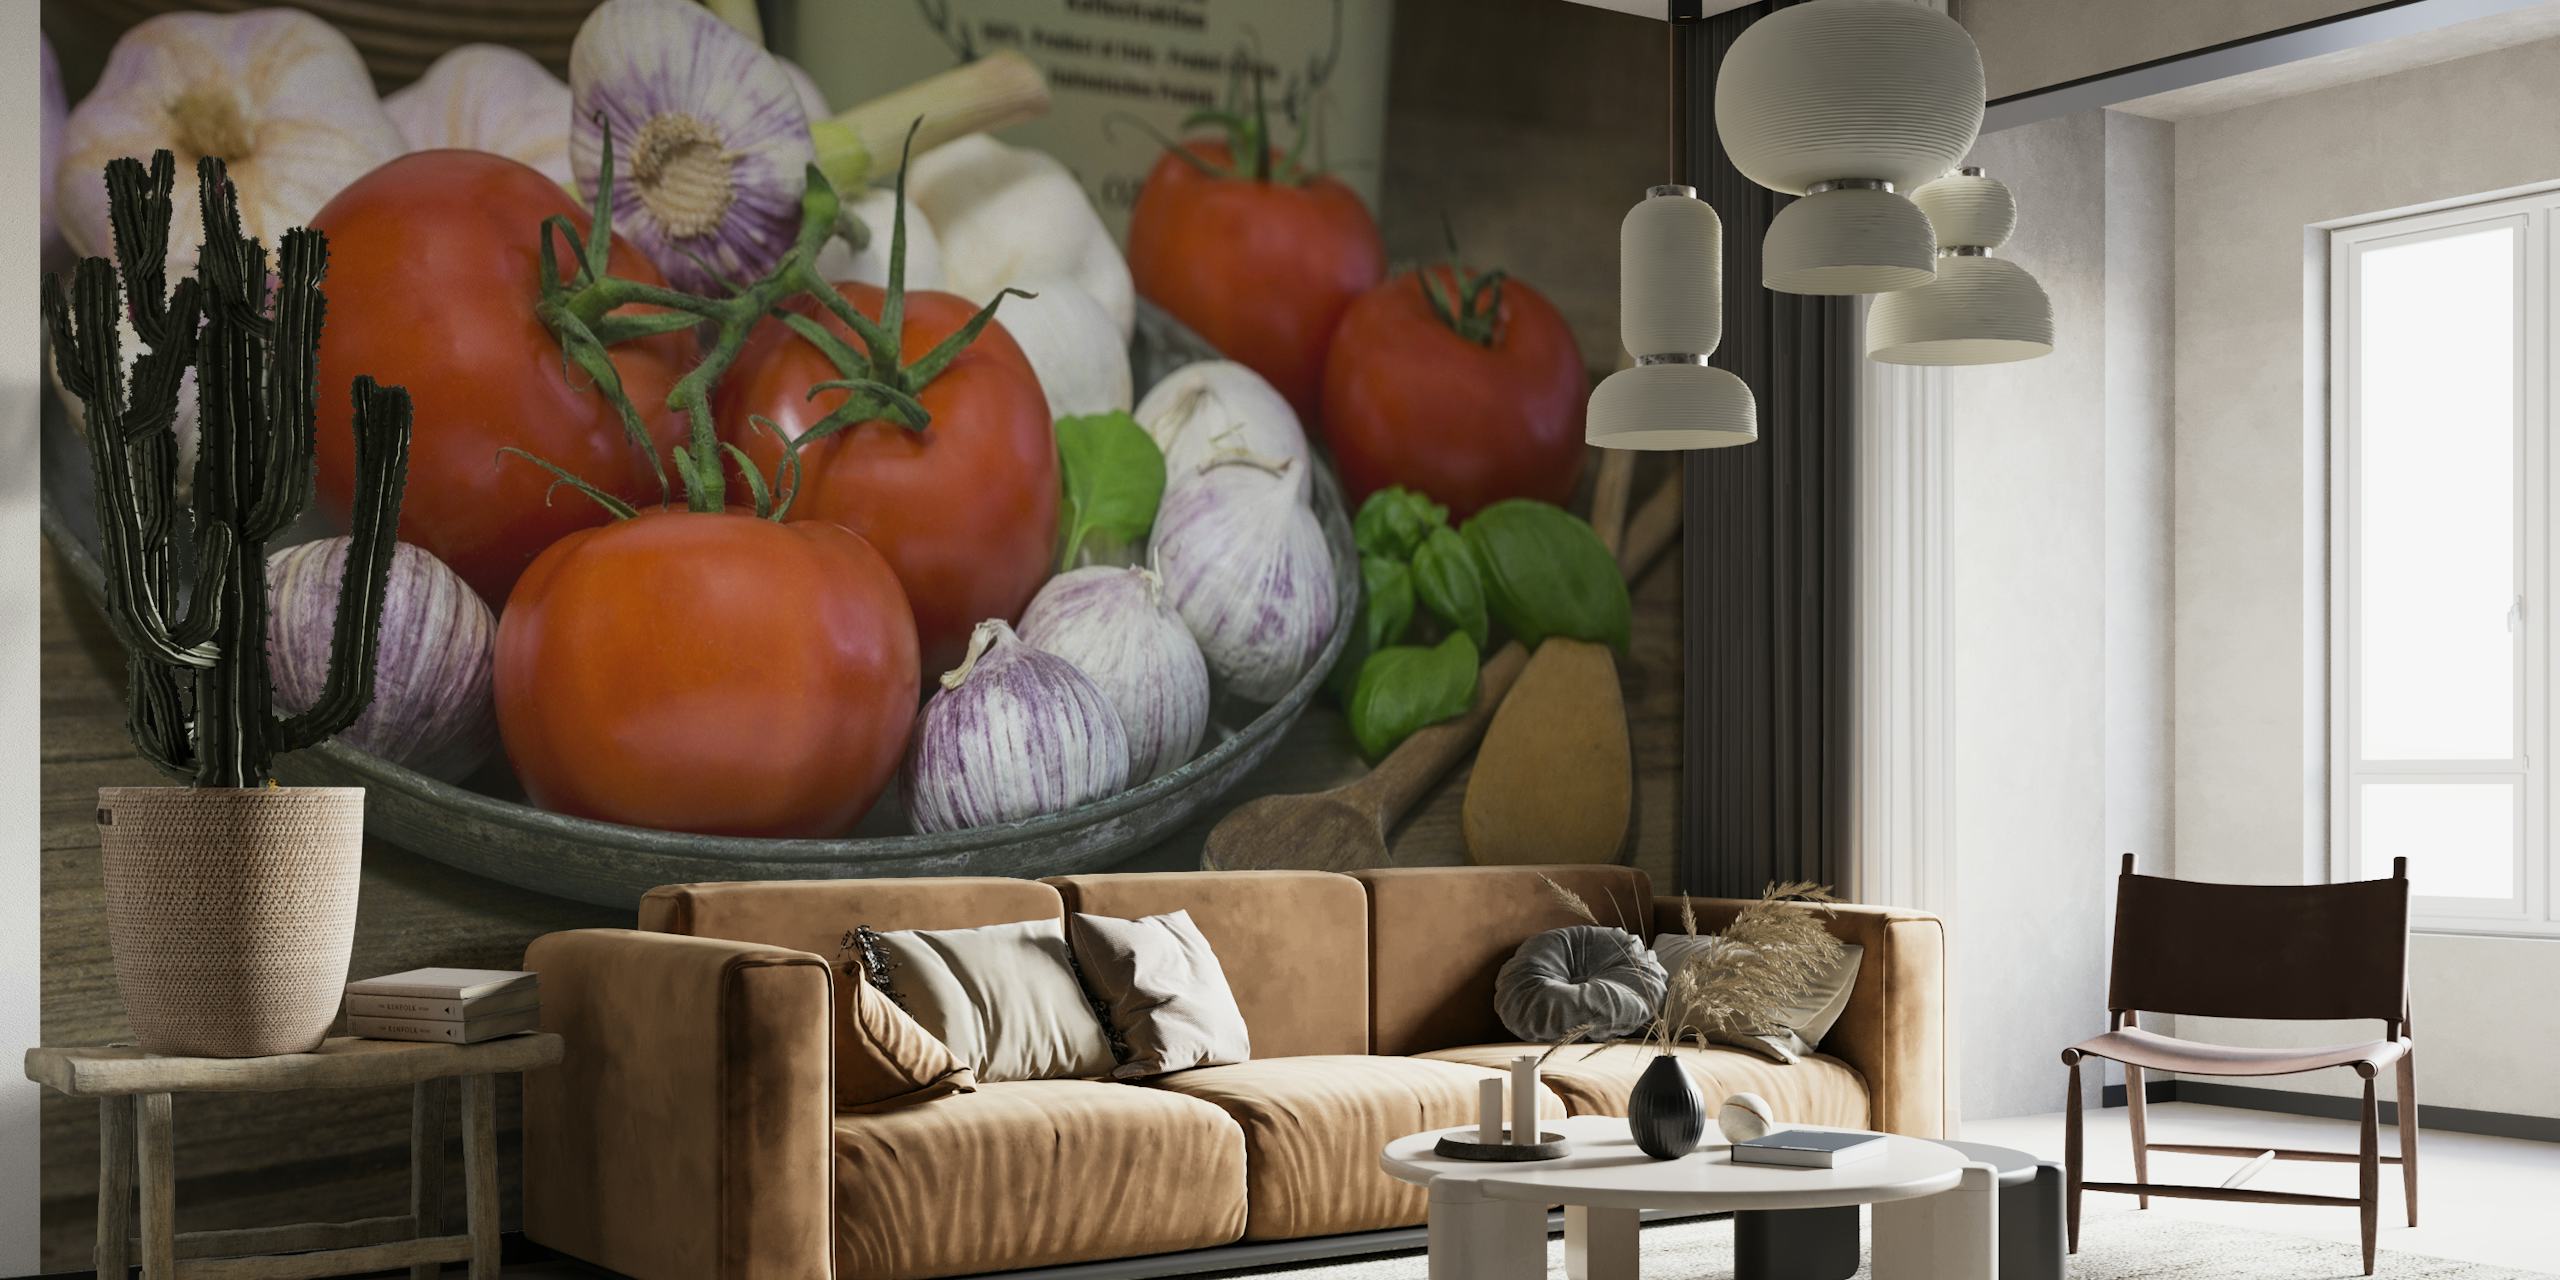 Vægmaleri af væsentlige italienske retter med tomater, hvidløg og basilikum på et træbord